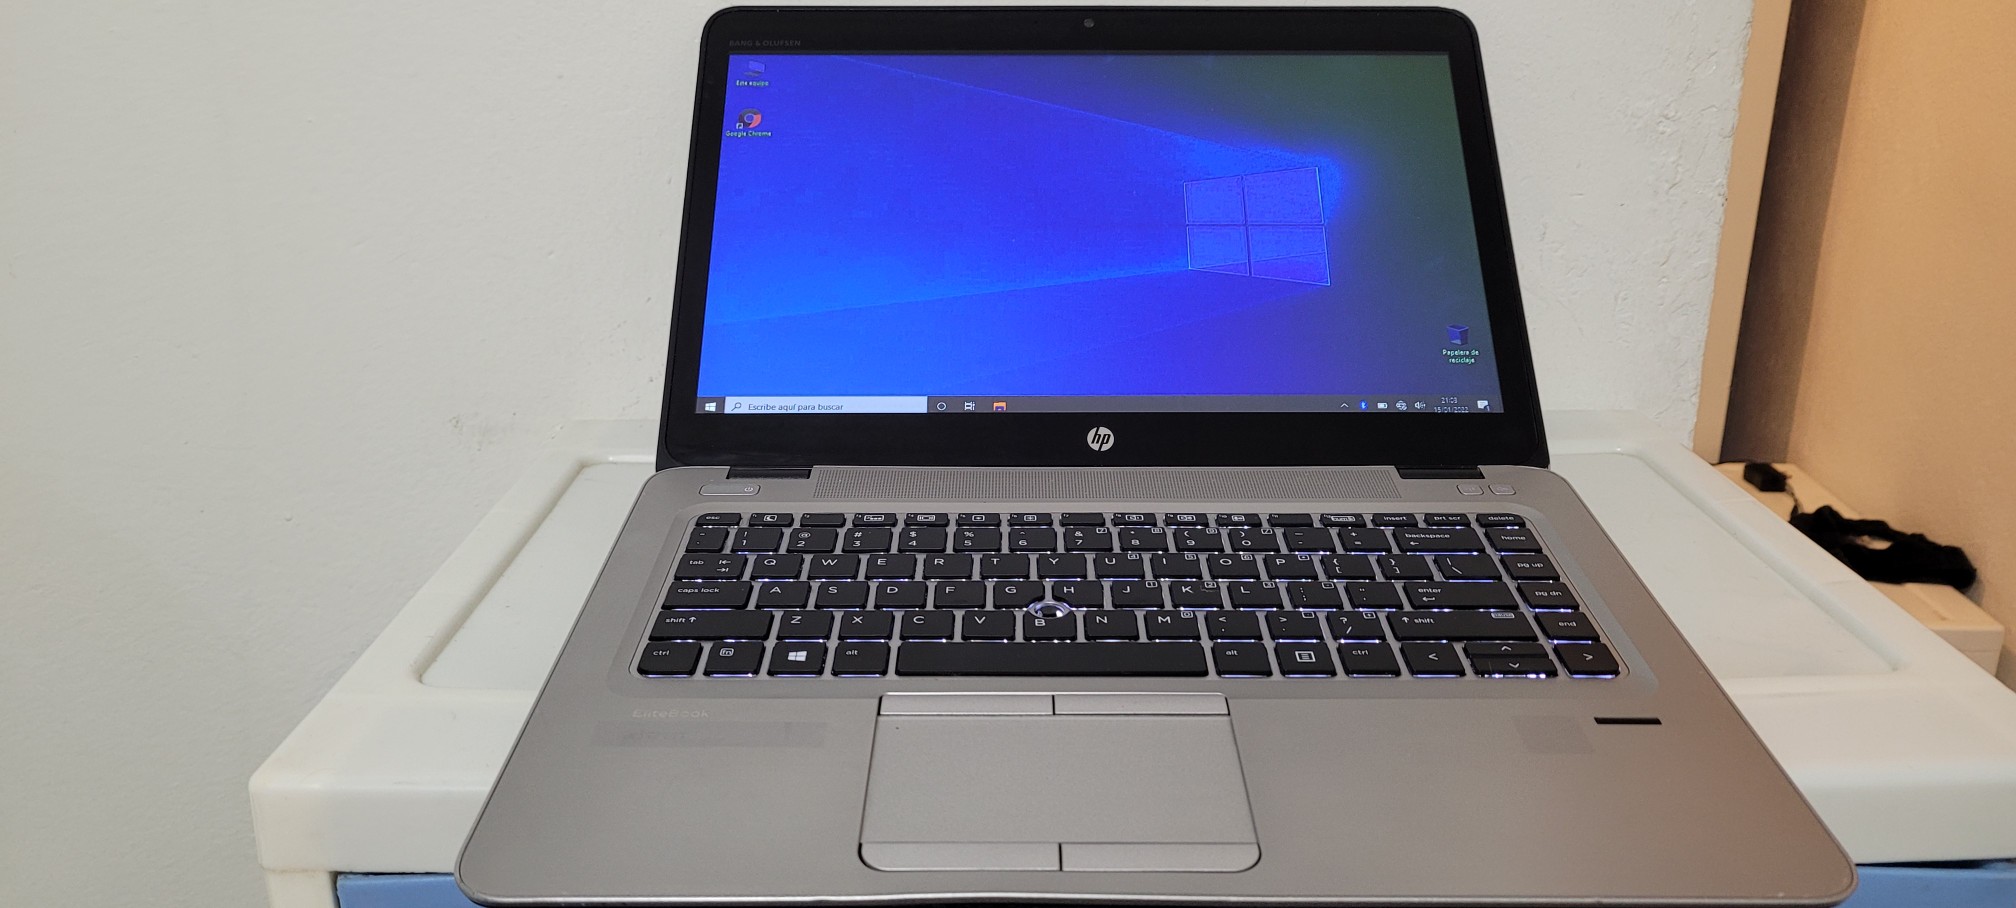 computadoras y laptops - Laptop 840 14 Core i5 7ma Gen Ram 8gb ddr4 Disco 128gb Y 320gb full